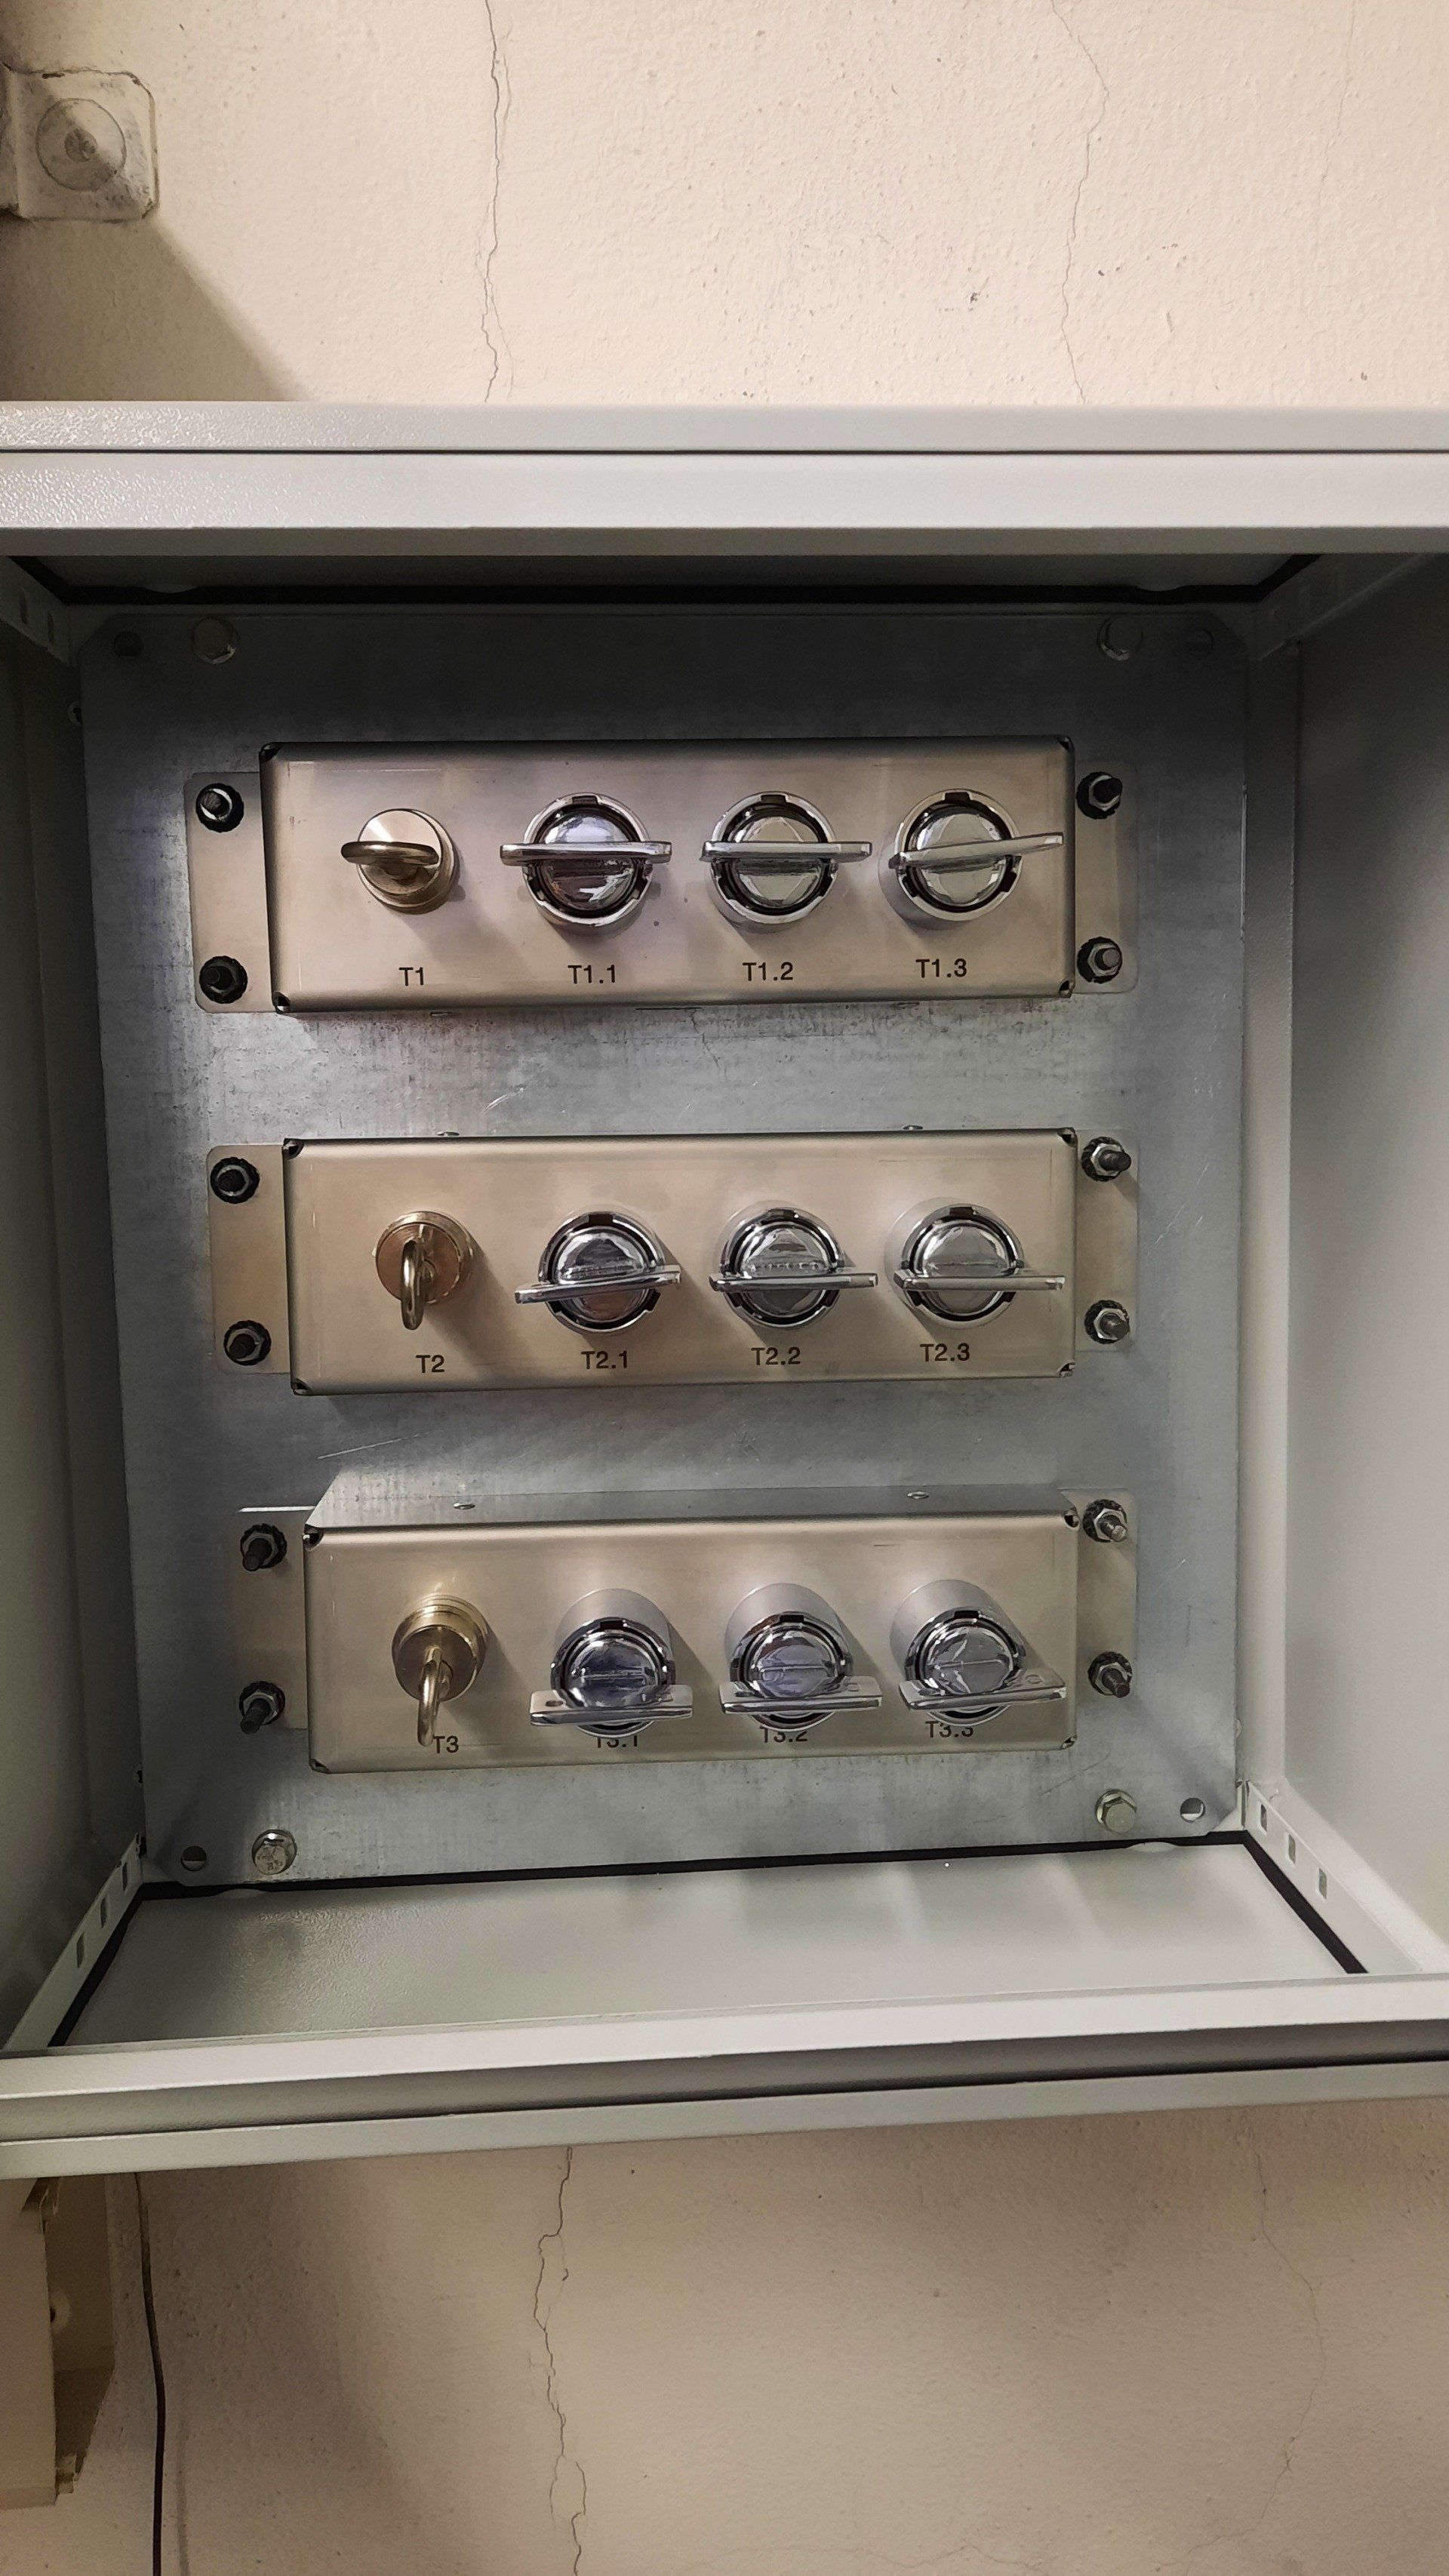 Coberlocks - Distributore chiavi per la gestione in sicurezza della procedura di messa a terra del sezionatore con l'apertura della cella del trasformatore